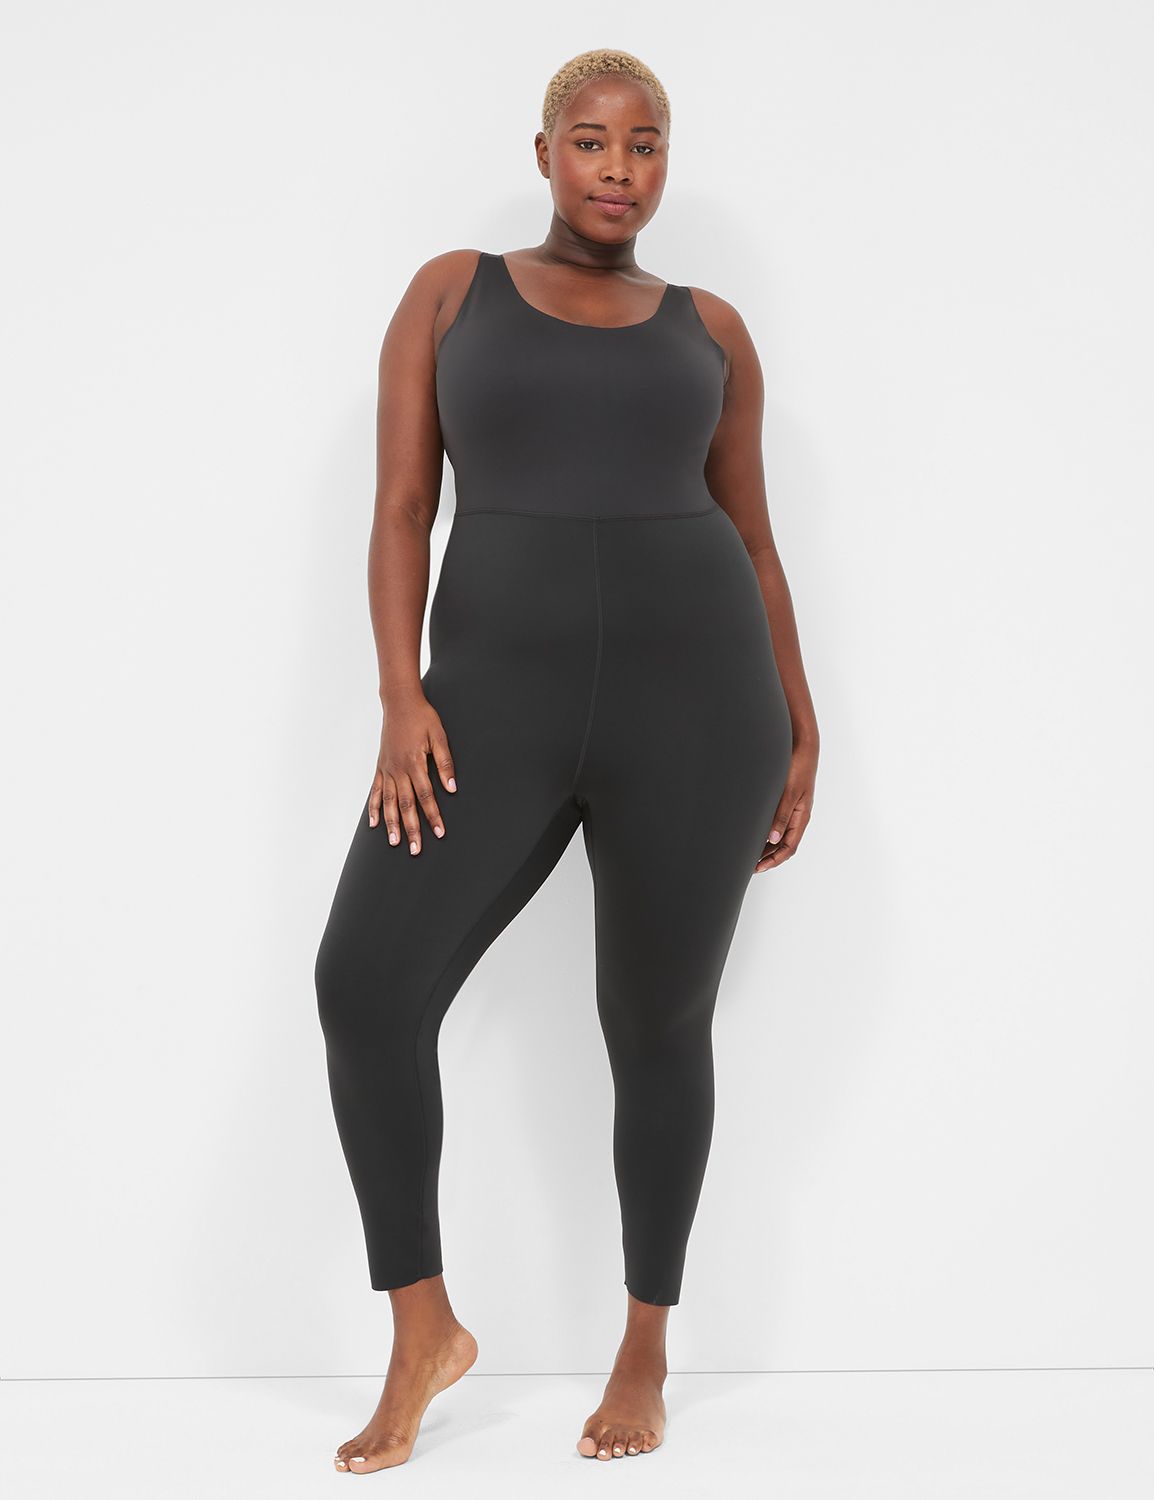 Women's plus size shapewear leggings by Lane Bryant. - Depop